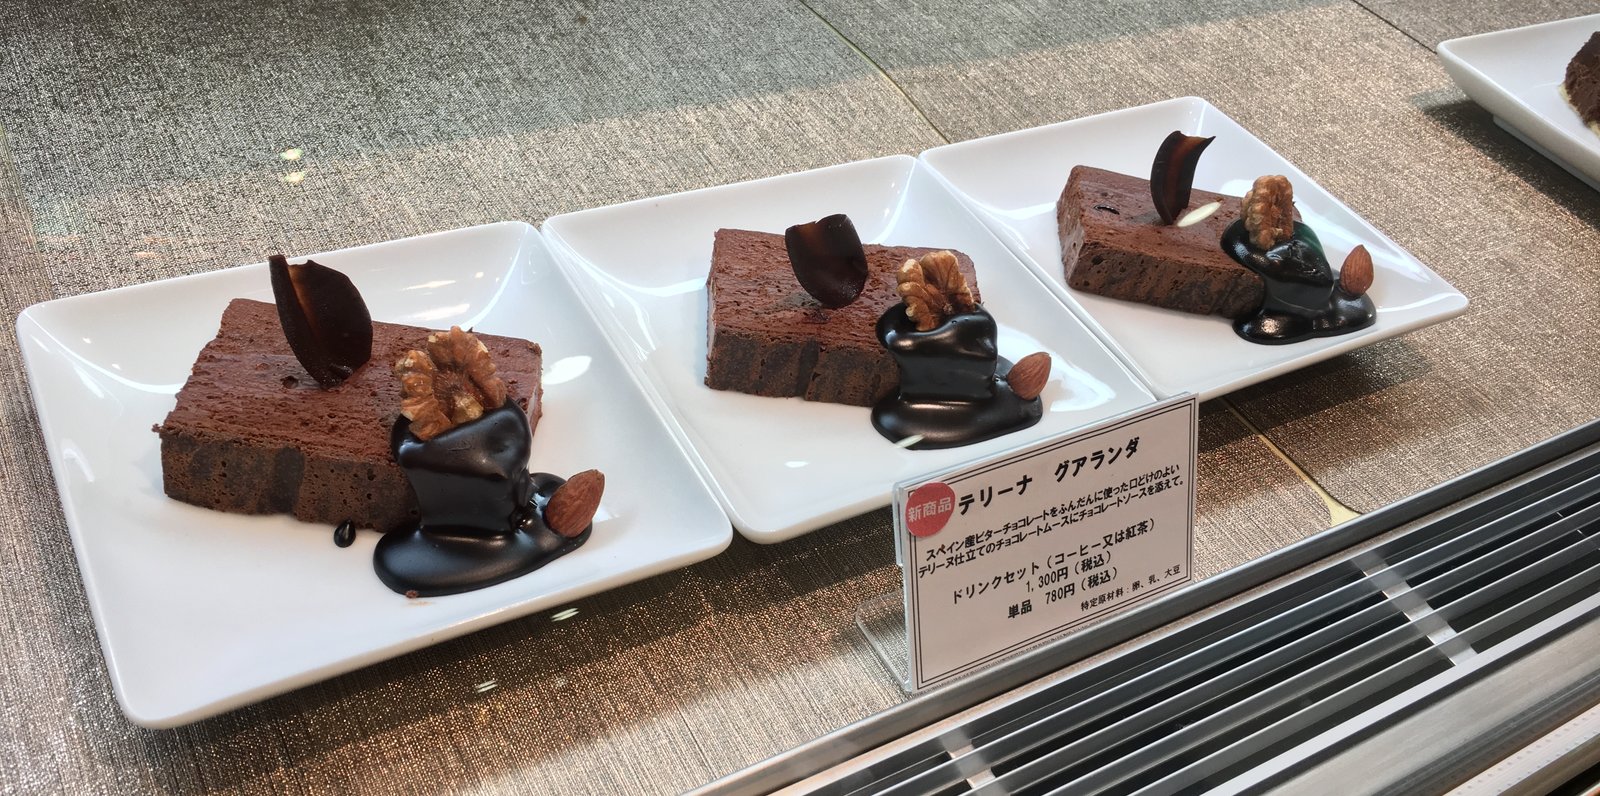 梅田 カフェ 食器からこだわった ちょっとリッチなチョコレート専門店 Playlife プレイライフ